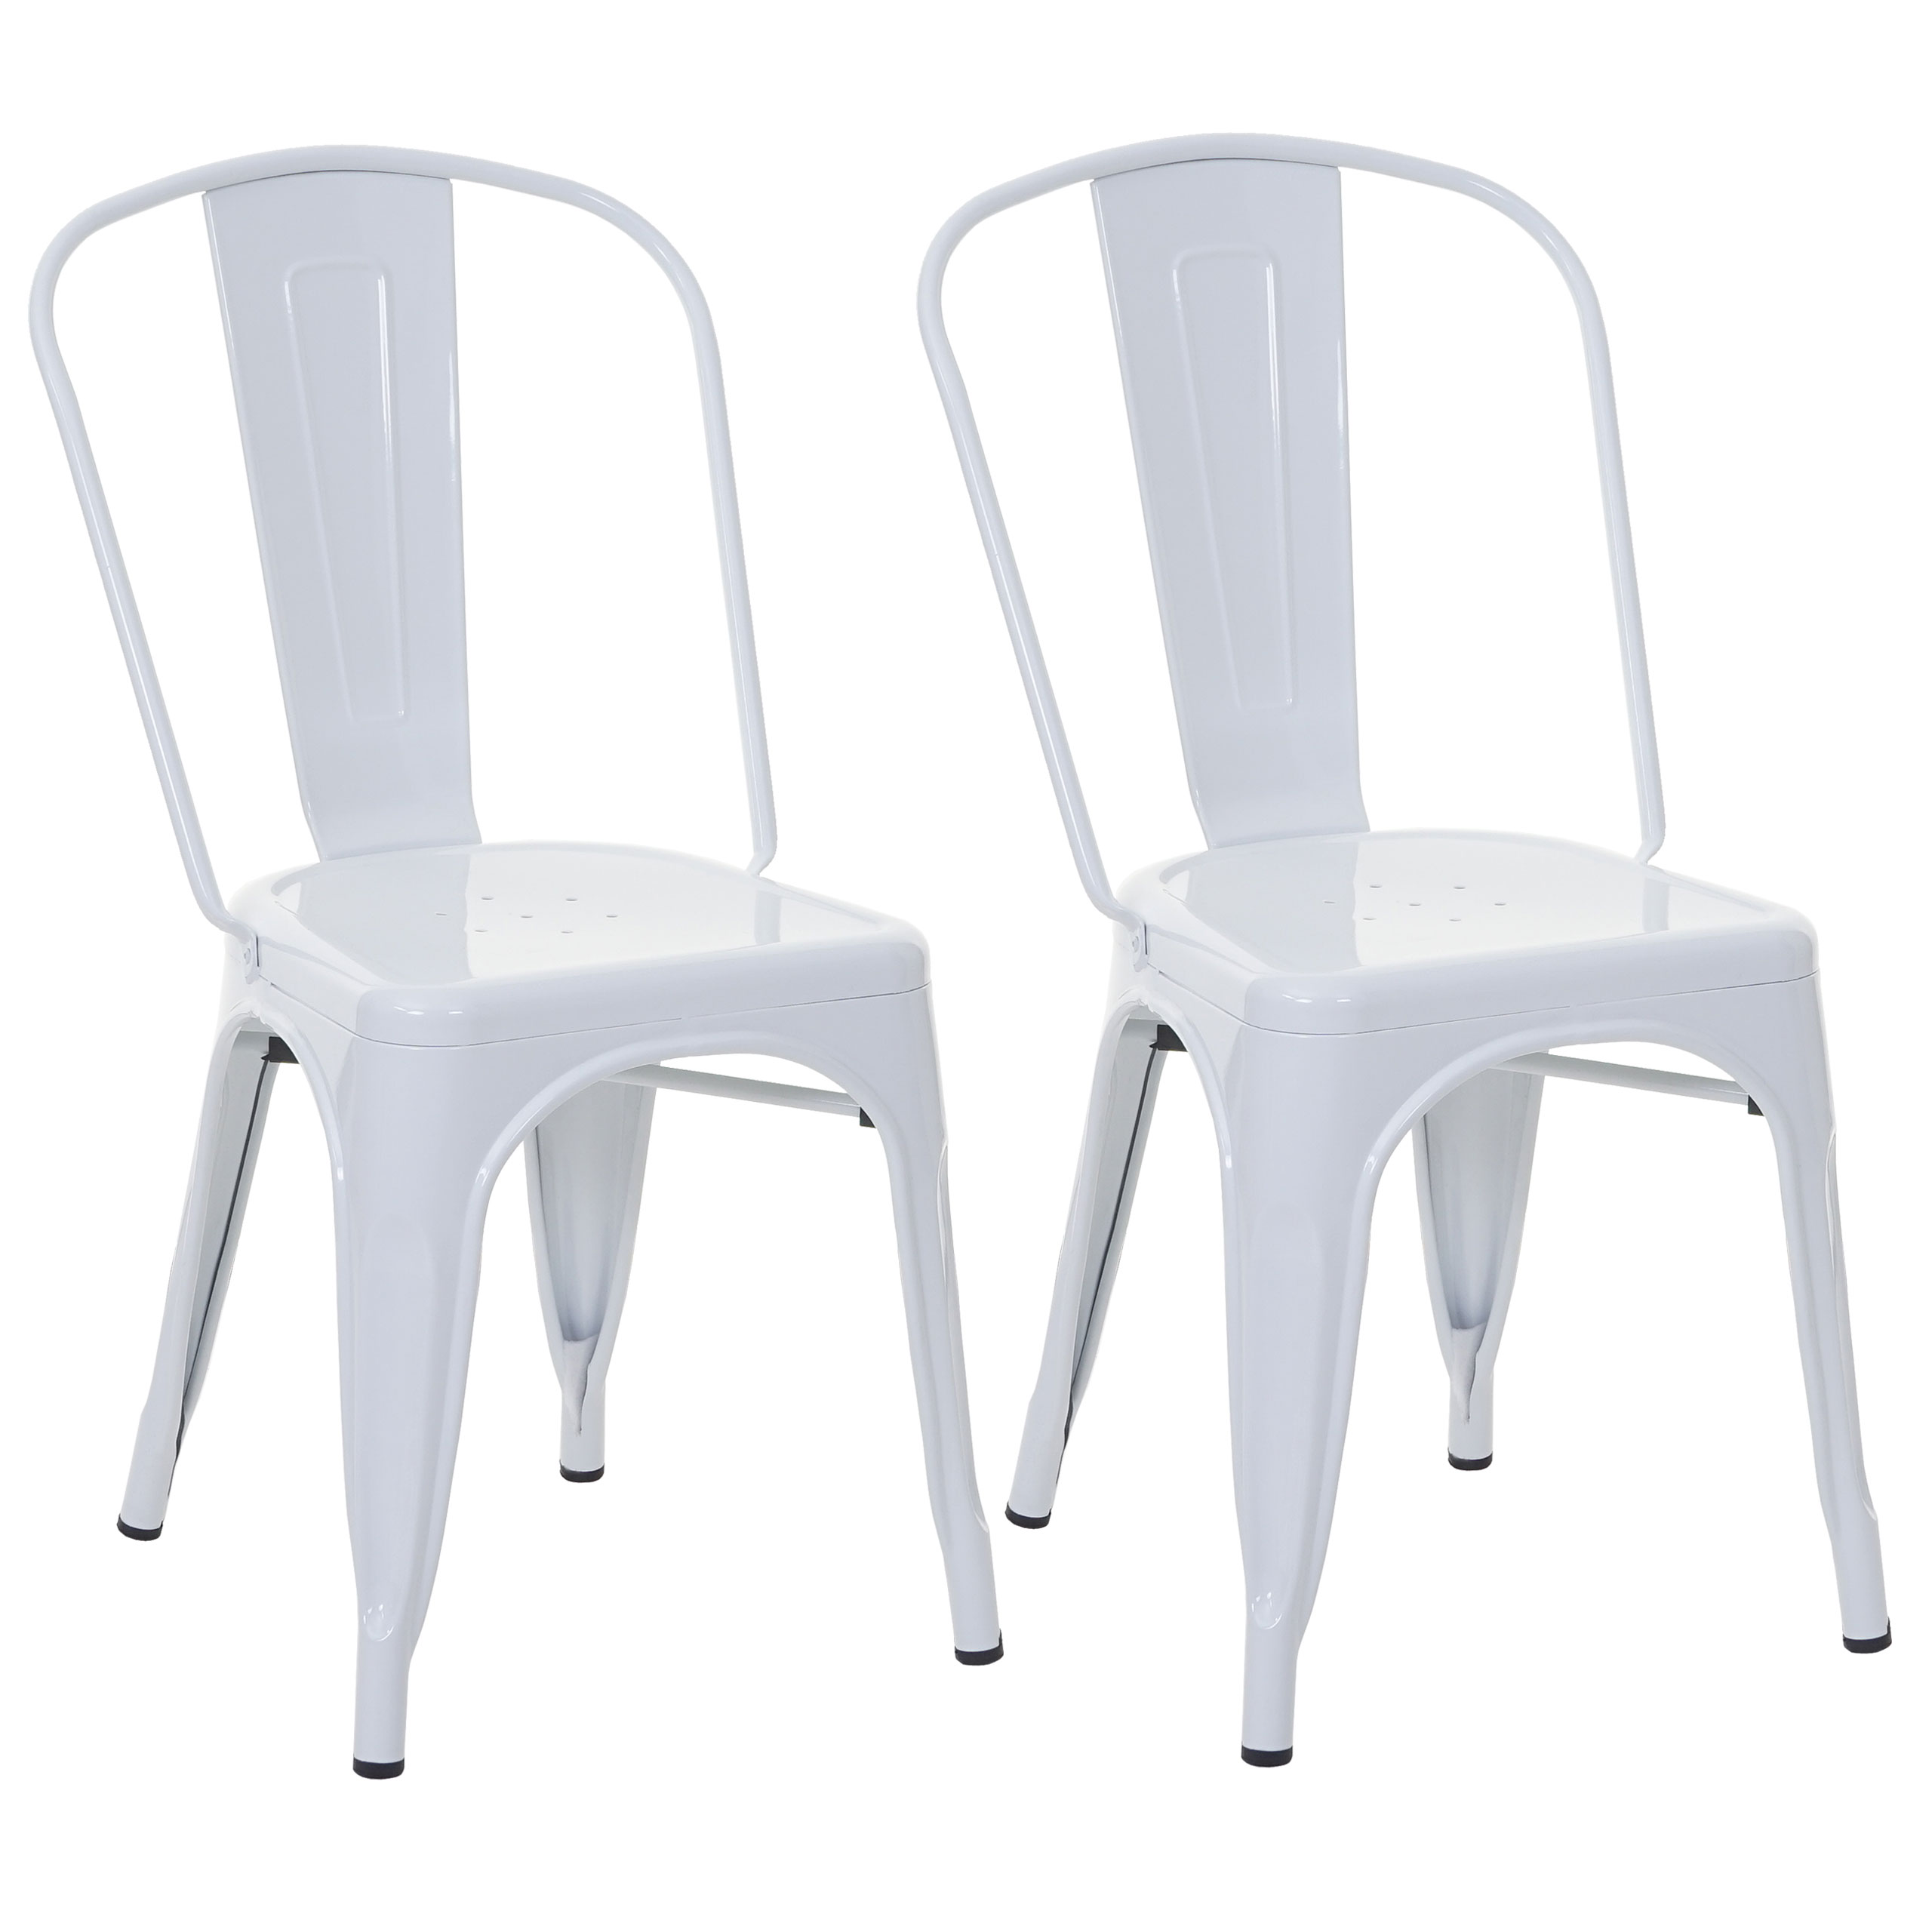 B-Ware 2x Stuhl HWC-A73 weiß Bistrostuhl Metall Industriedesign stapelbar 